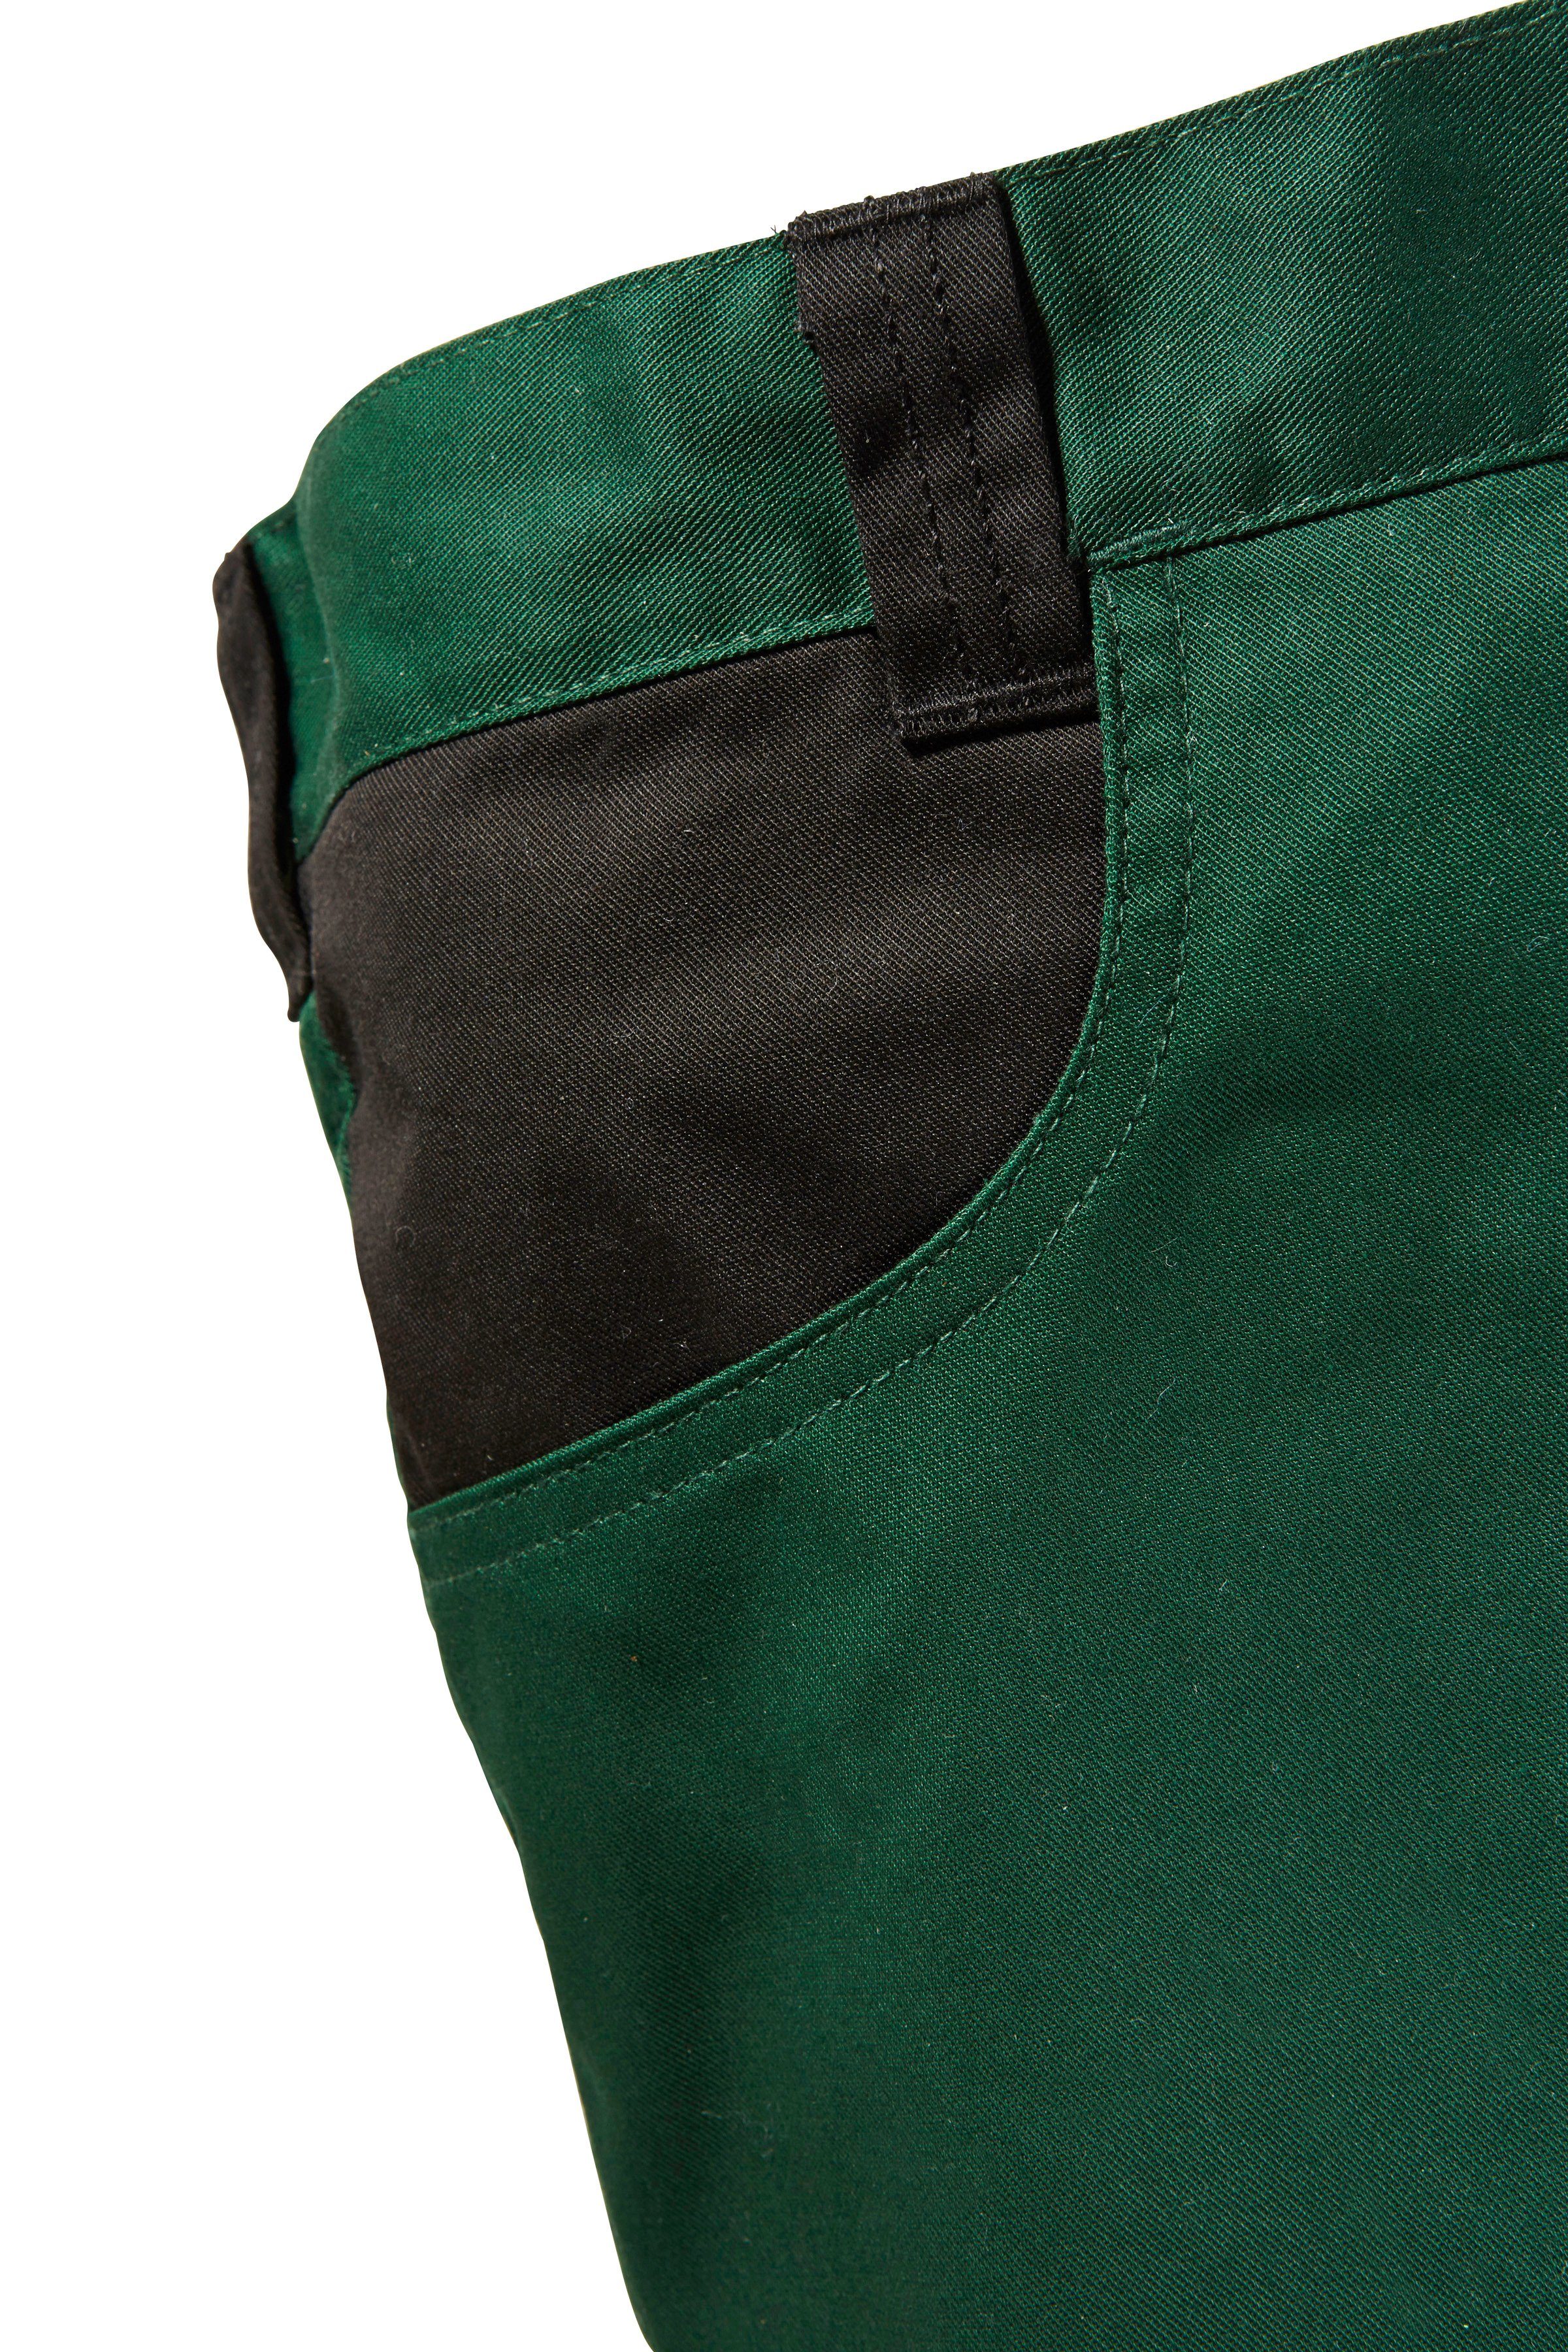 safety& more Arbeitshose grün-schwarz Knieverstärkung Pull mit